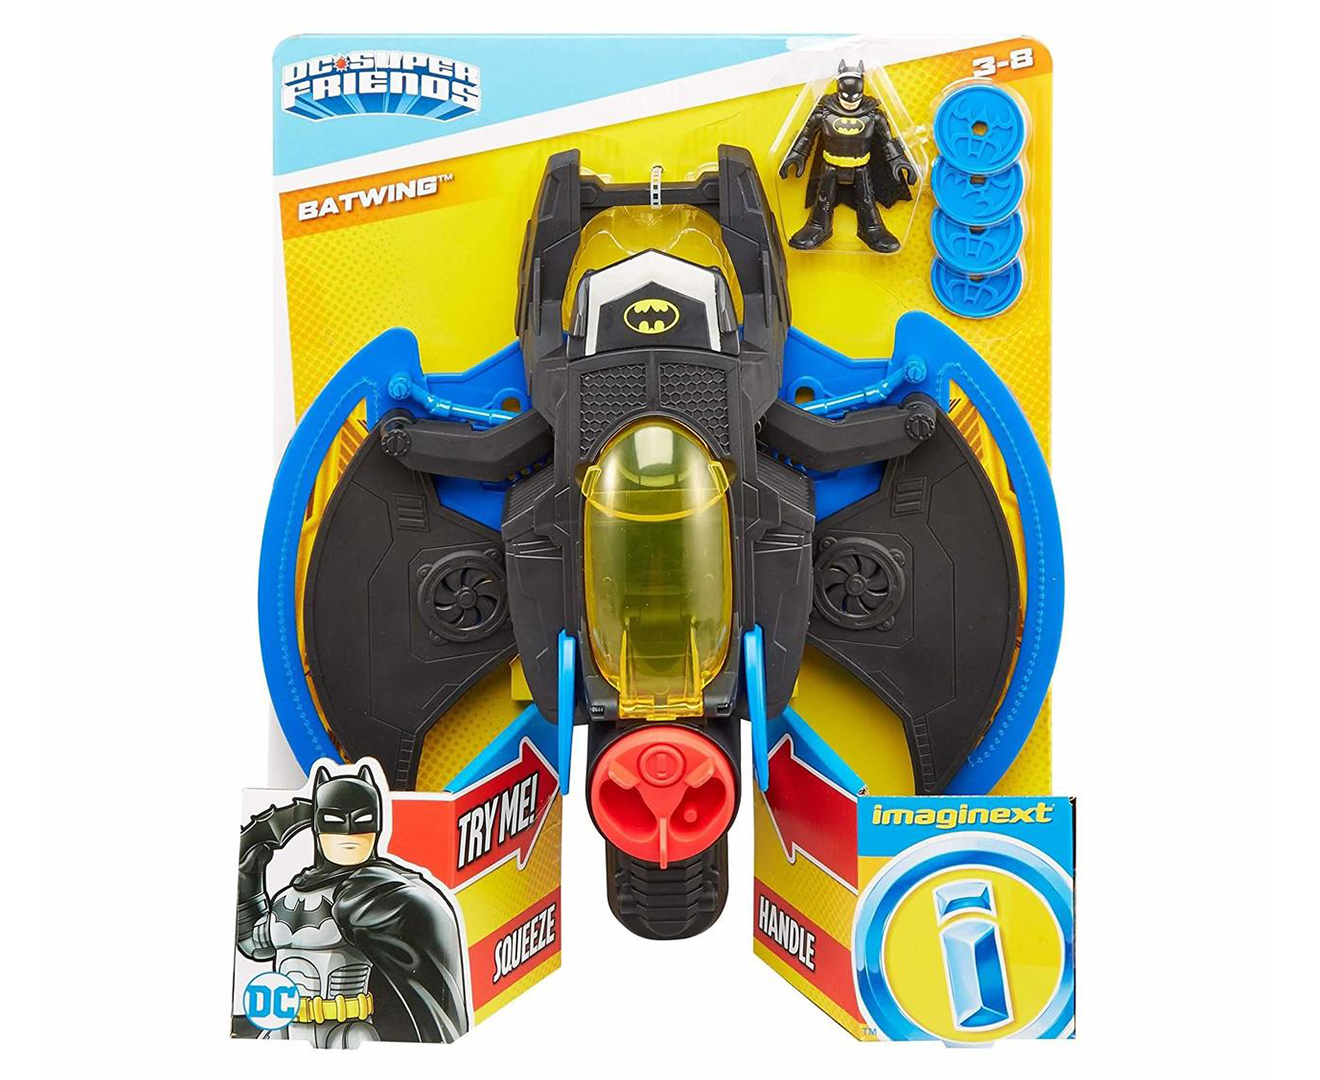 Imaginext DC Super Friends Batwing Toy 